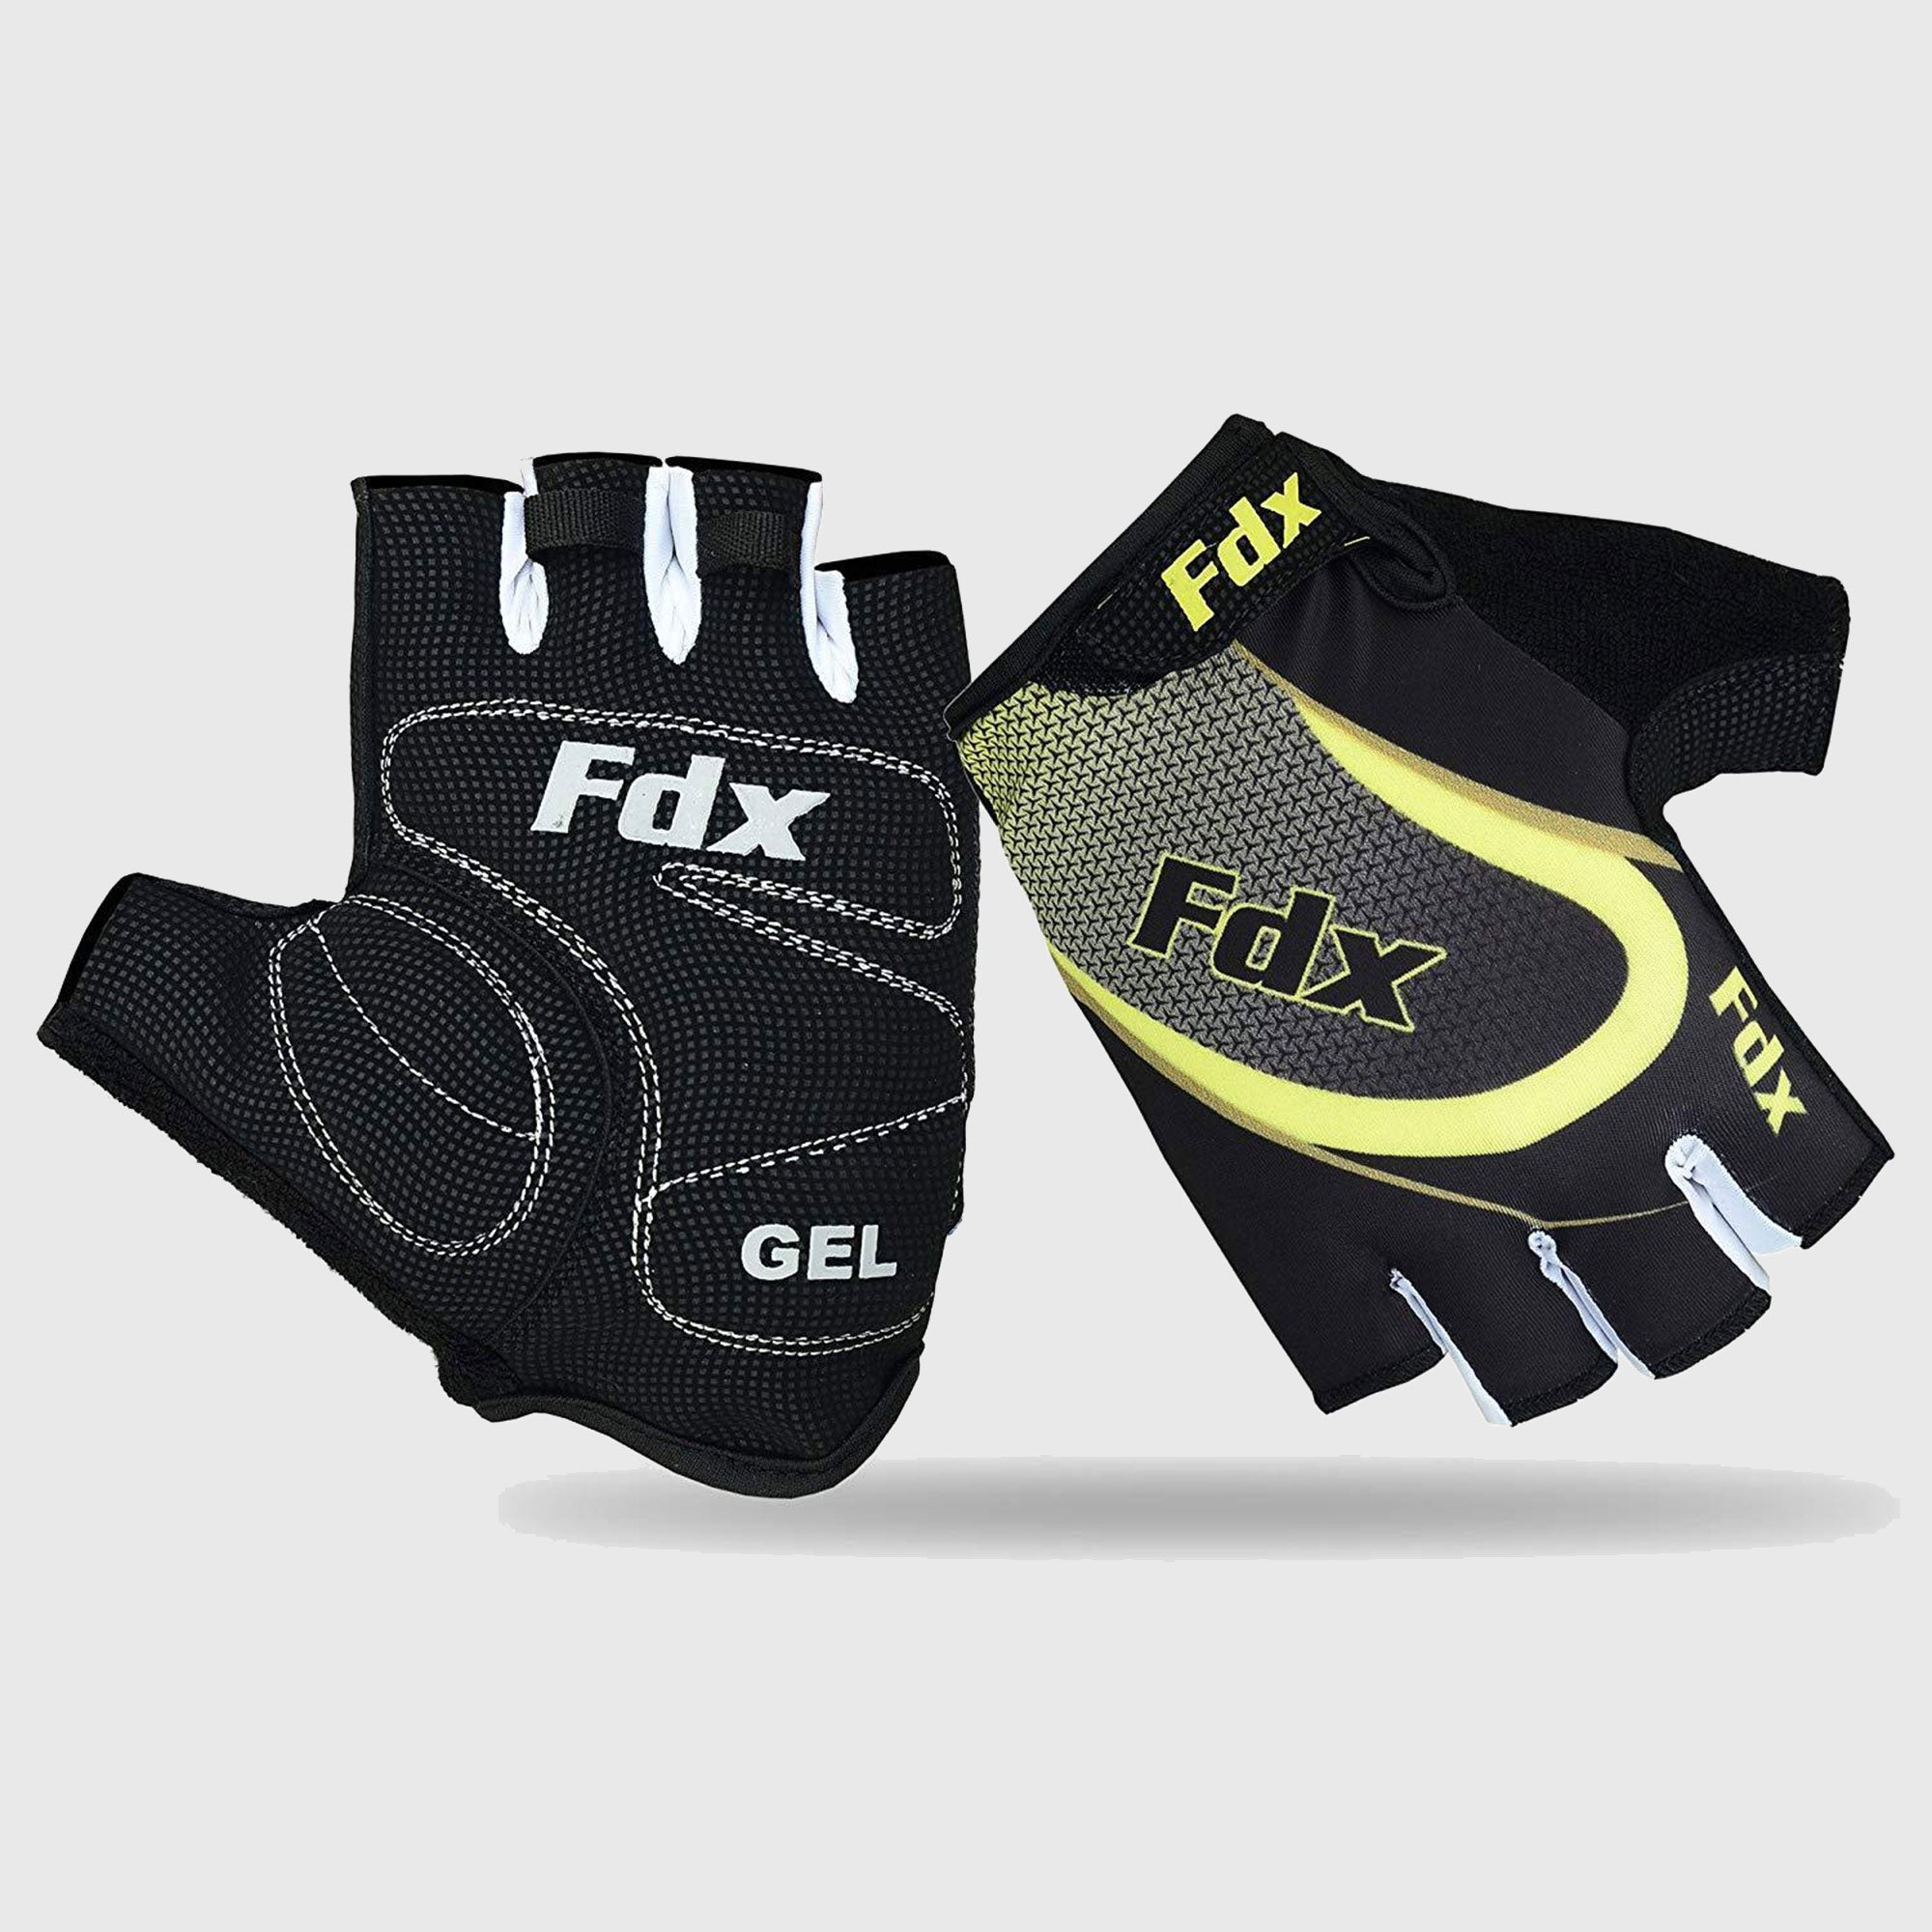 Fdx Black & Fluorescent Yellow Short Finger Cycling Gloves for Summer MTB Road Bike fingerless, anti slip & Breathable - Surf